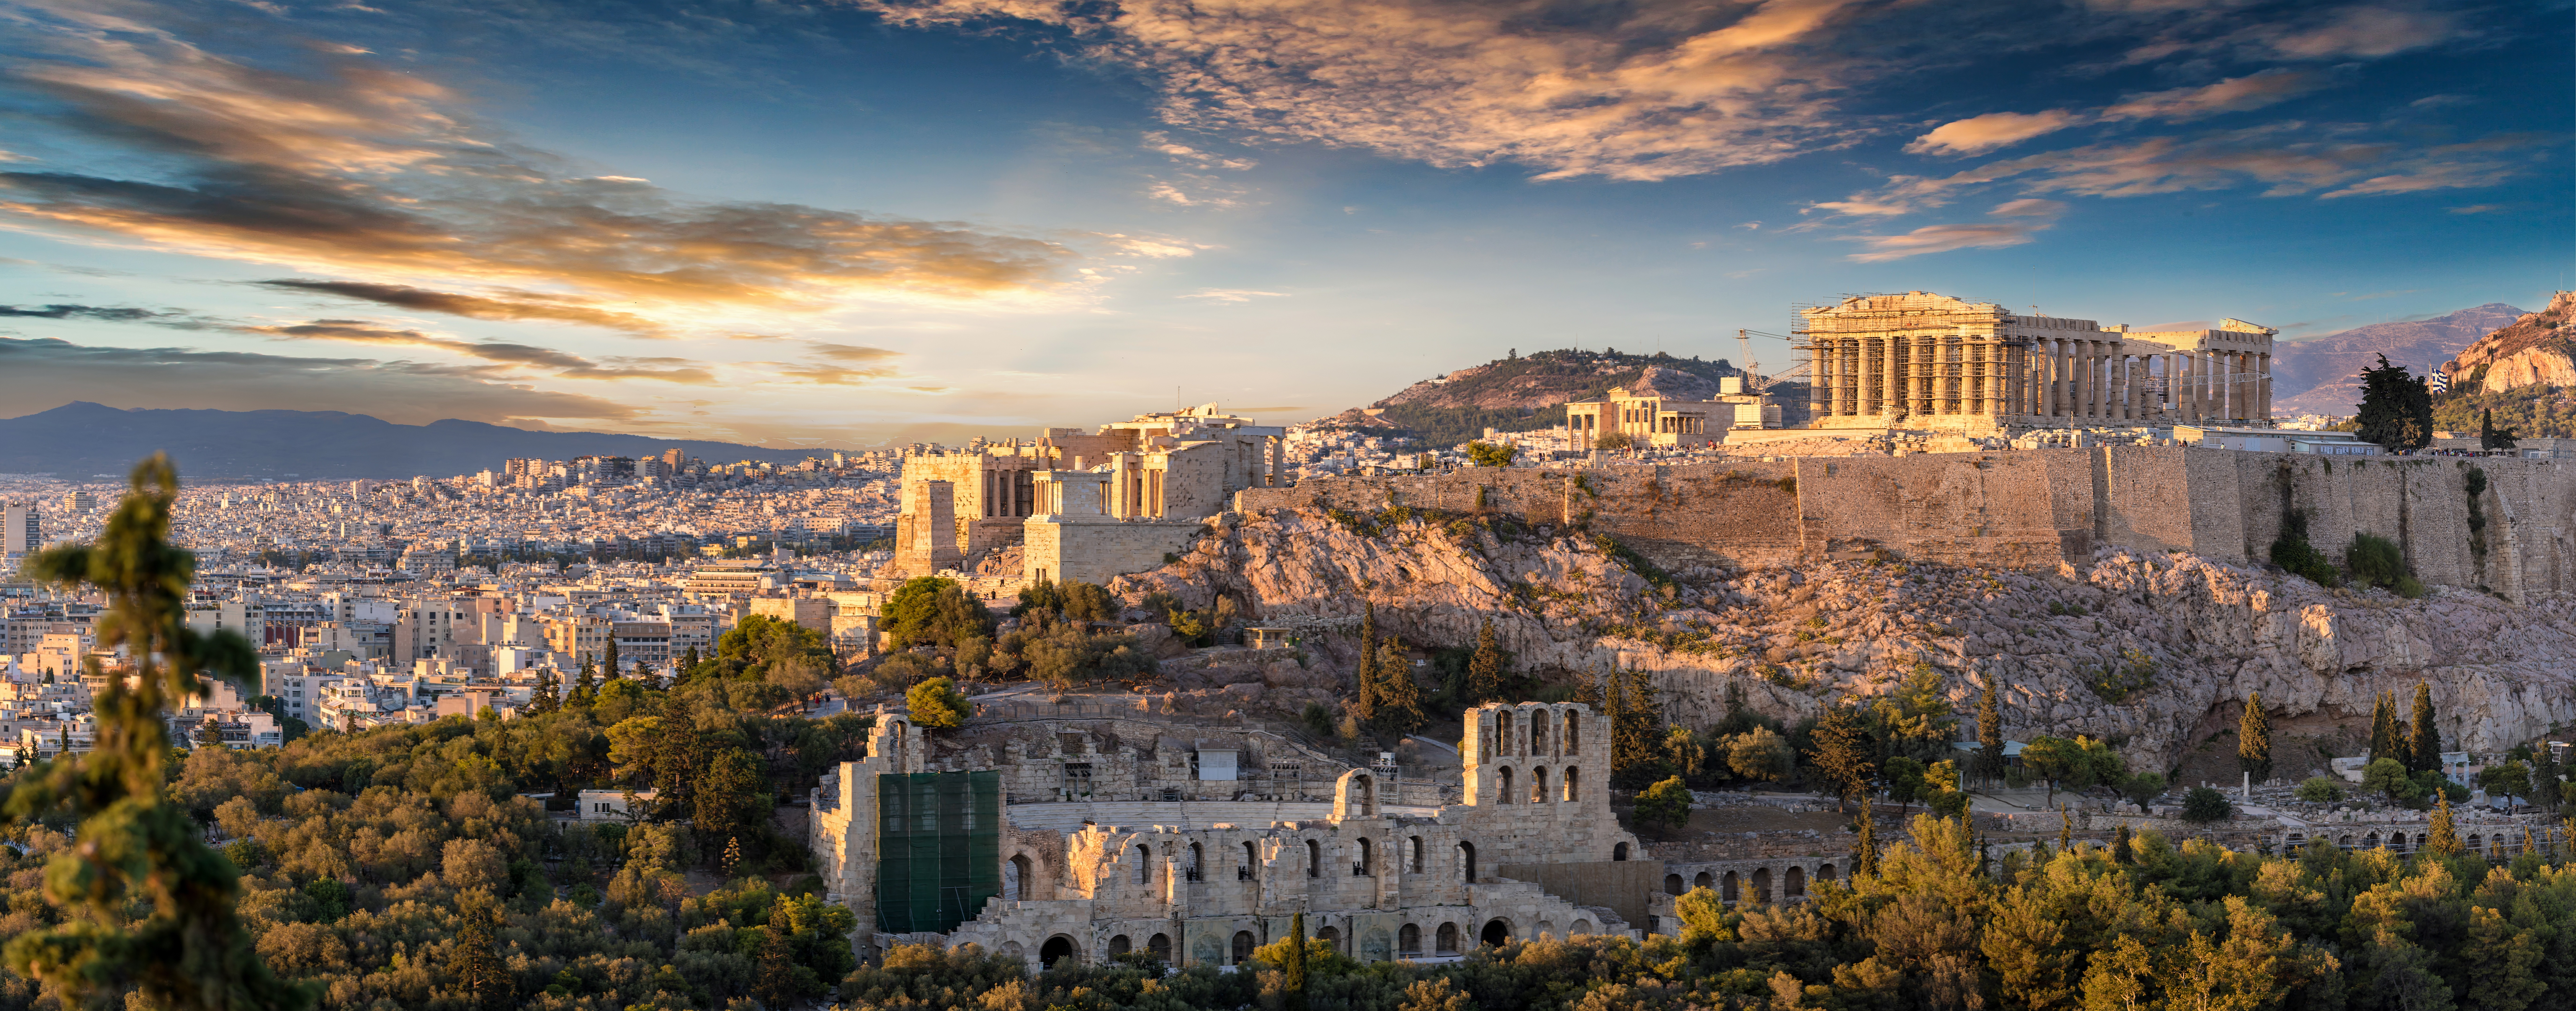 Panorama der Akropolis von Athen, Griechenland, bei Sonnenuntergang